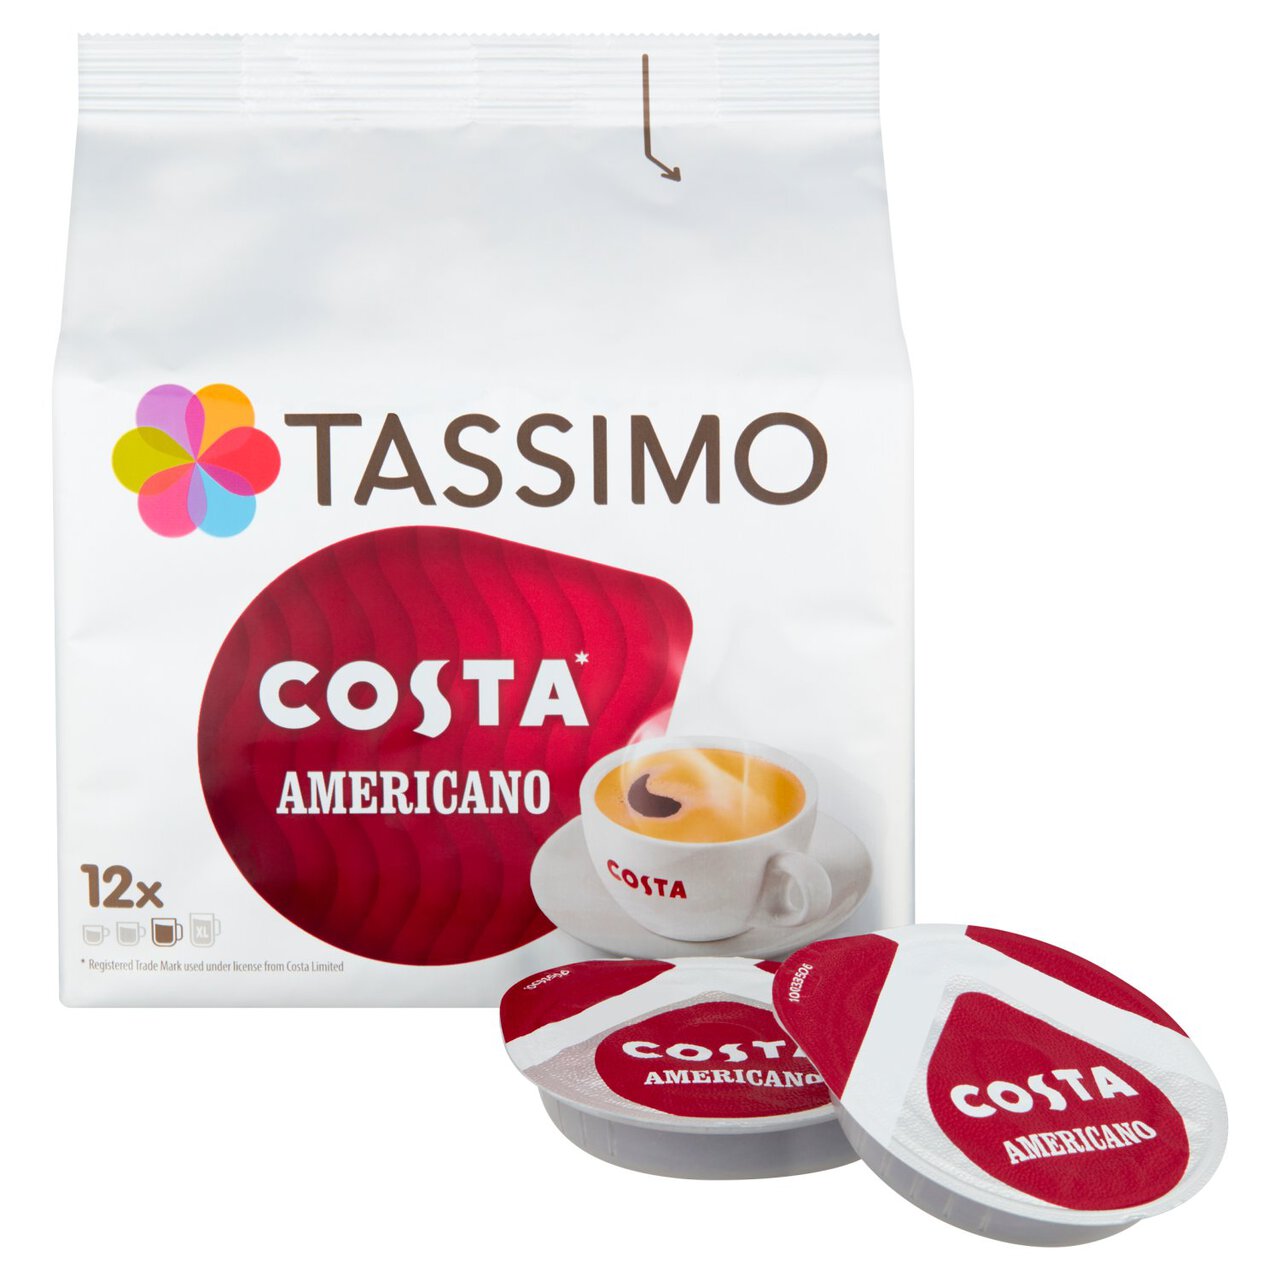 Tassimo Costa Americano Coffee Pods 12 per pack